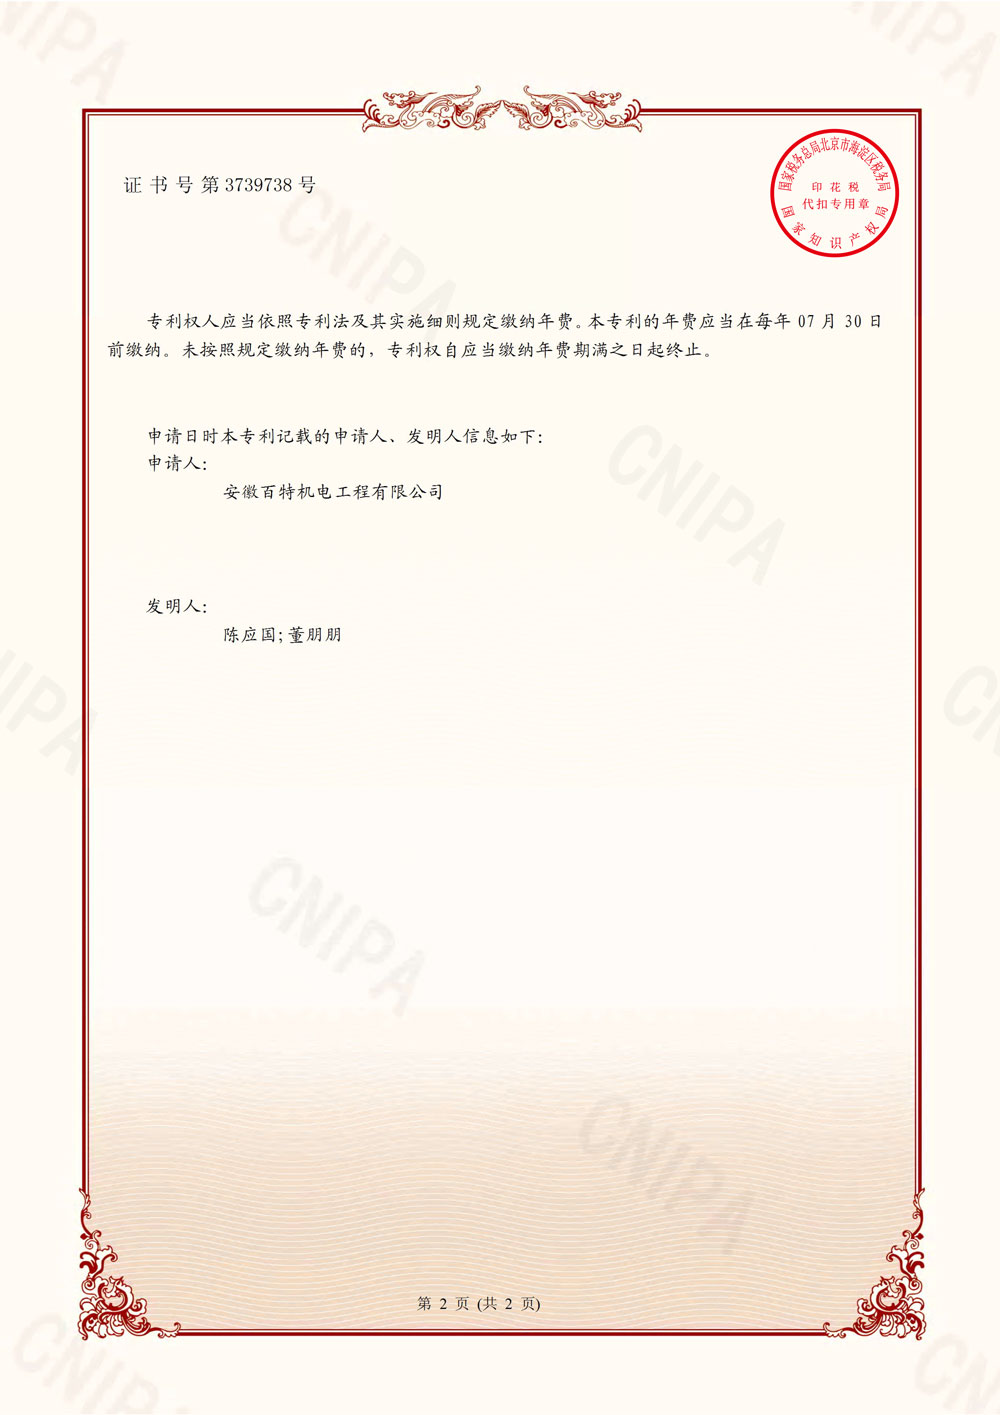 上海百特第7件发明专利证书-2